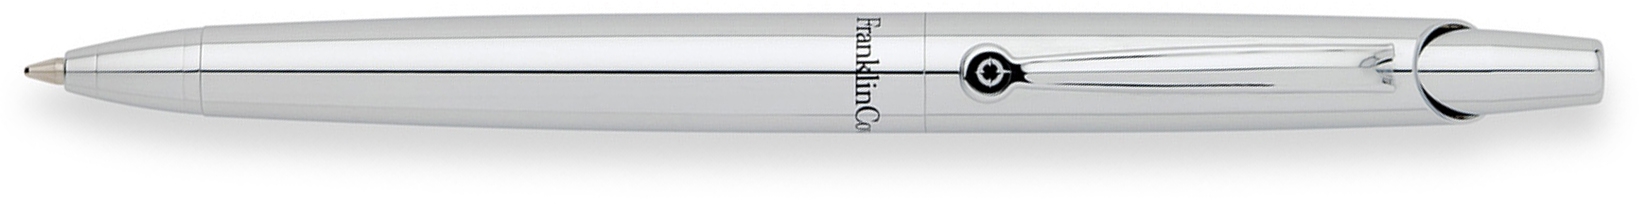 Шариковая ручка FranklinCovey Nantucket. Цвет- хромированный., серебристый, латунь, нержавеющая сталь